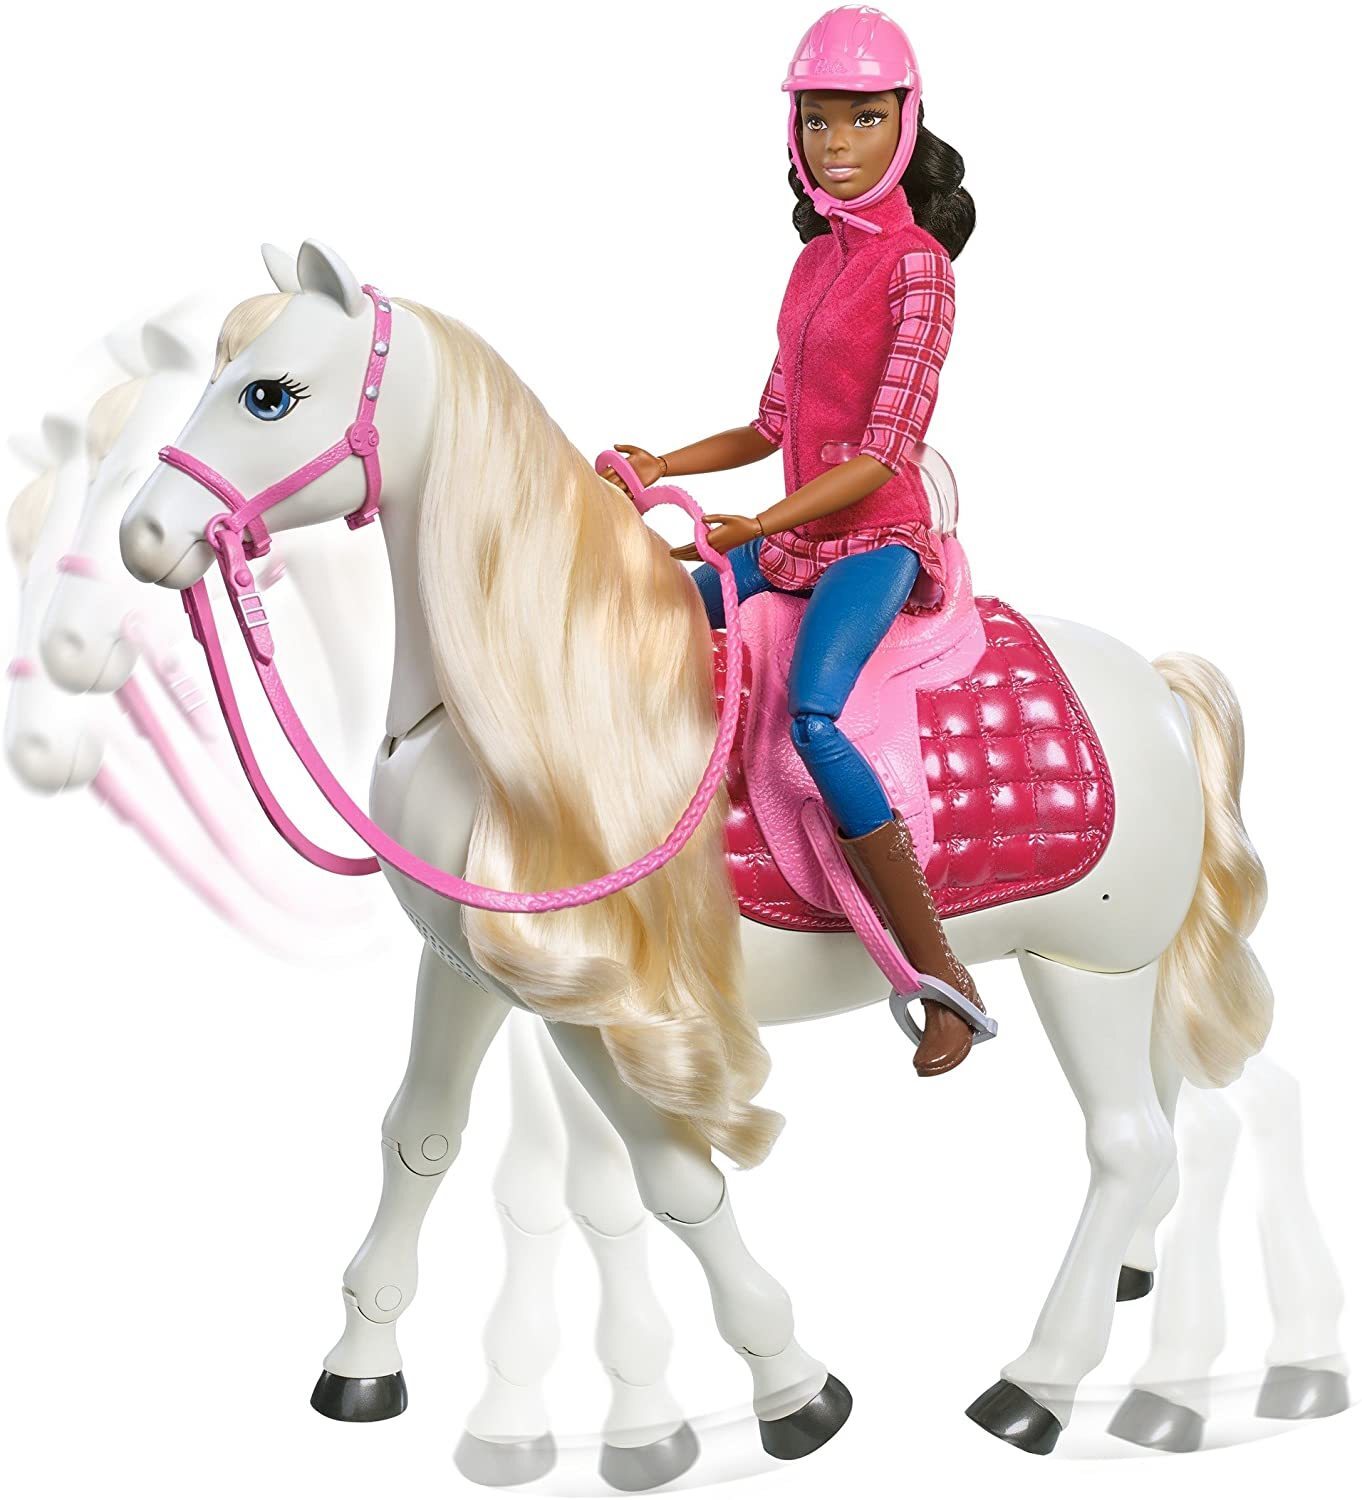 Игрушка барби купить. Набор Barbie и лошадь мечты, 29 см, frv36. Кукла Барби Маттел наездница. Игровой набор Barbie наездница с лошадью fxh13. Барби всадница кукла.